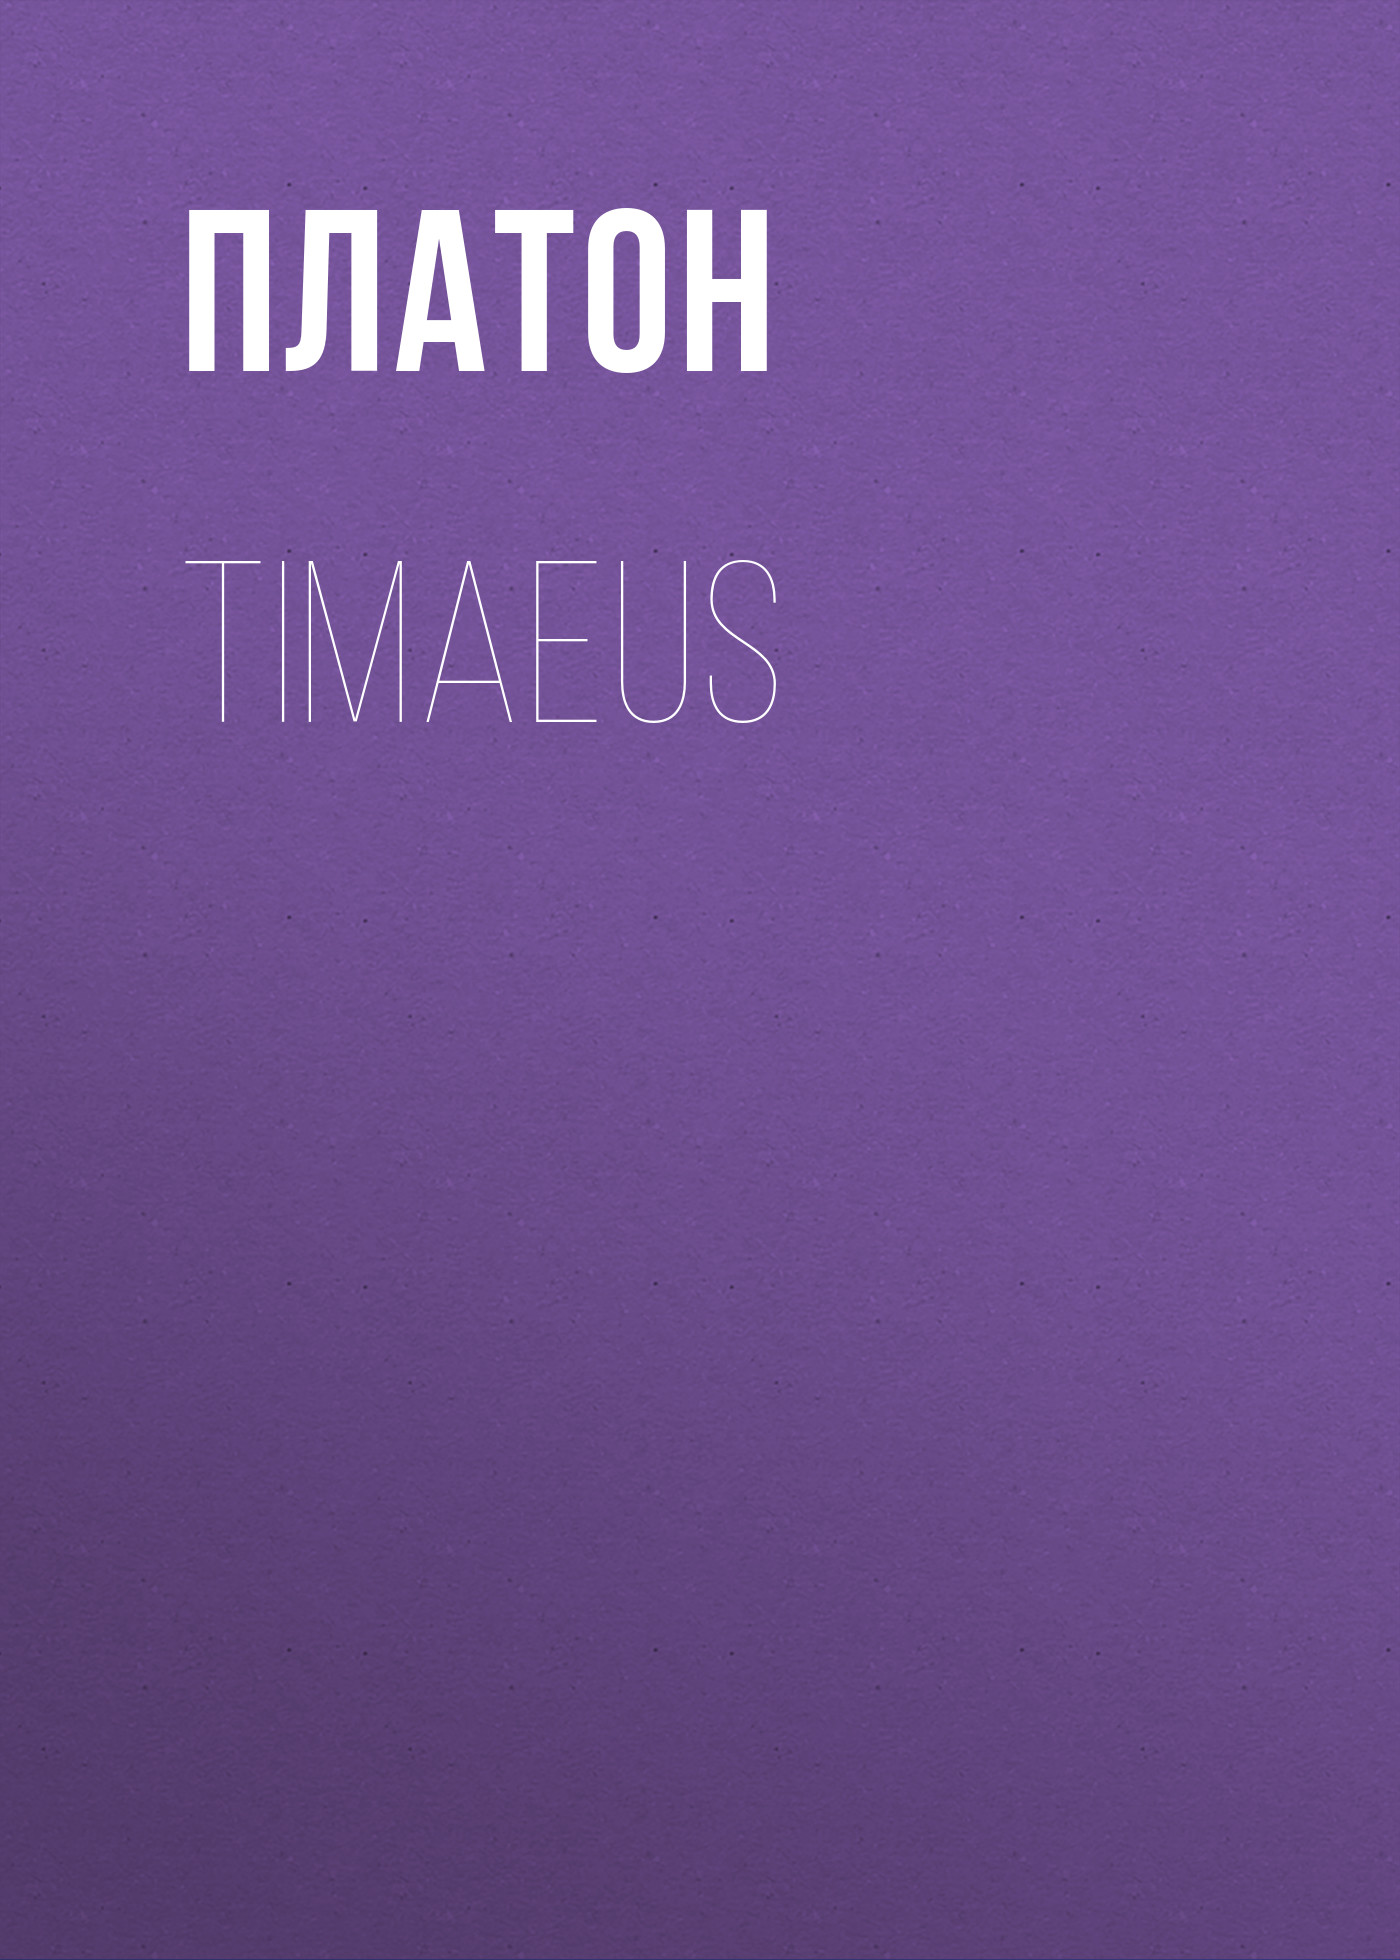 Книга Timaeus из серии , созданная  Платон, может относится к жанру Философия, Зарубежная старинная литература, Зарубежная классика. Стоимость электронной книги Timaeus с идентификатором 25293323 составляет 0 руб.